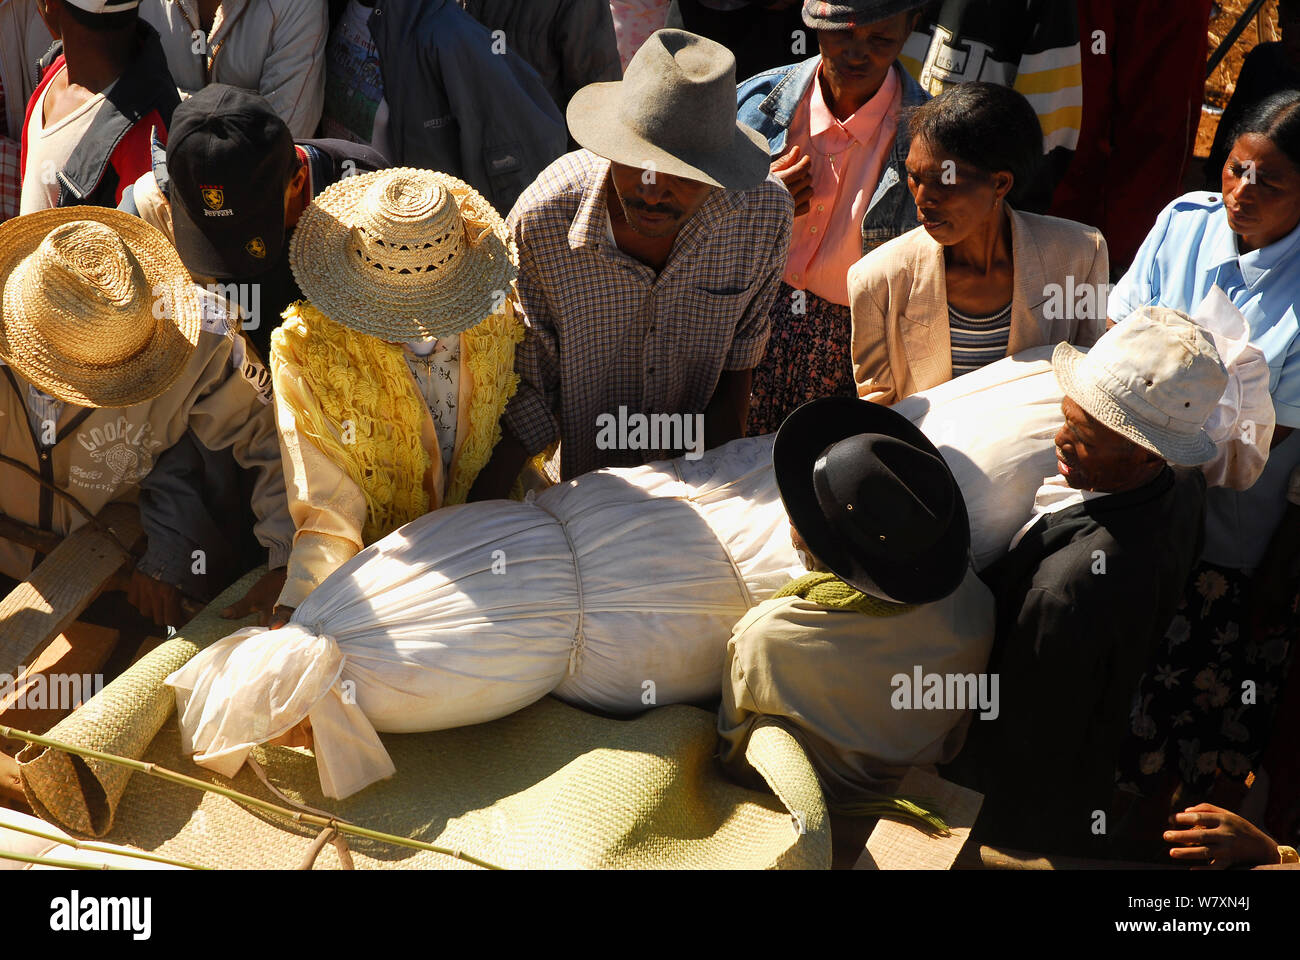 Famadihana, traditionelle Trauerfeier der Merina und Betsileo ethnischen Gruppen, in denen die Toten sind alle sieben Jahre exhumiert, eine fröhliche Festival mit Tanz und Musiker. Antsirabe, Madagaskar, Februar 2005. Stockfoto